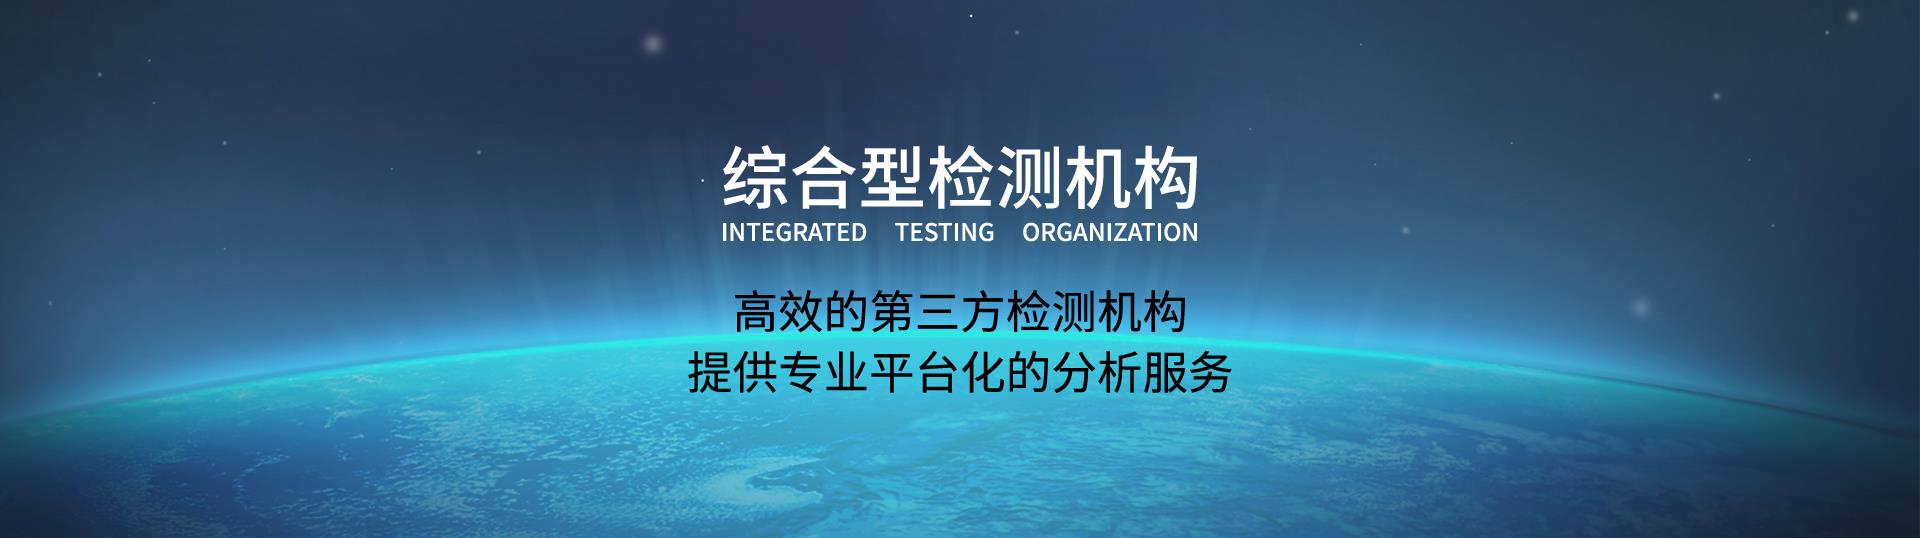 未知物分析材料检测机构深圳第三方检测机构